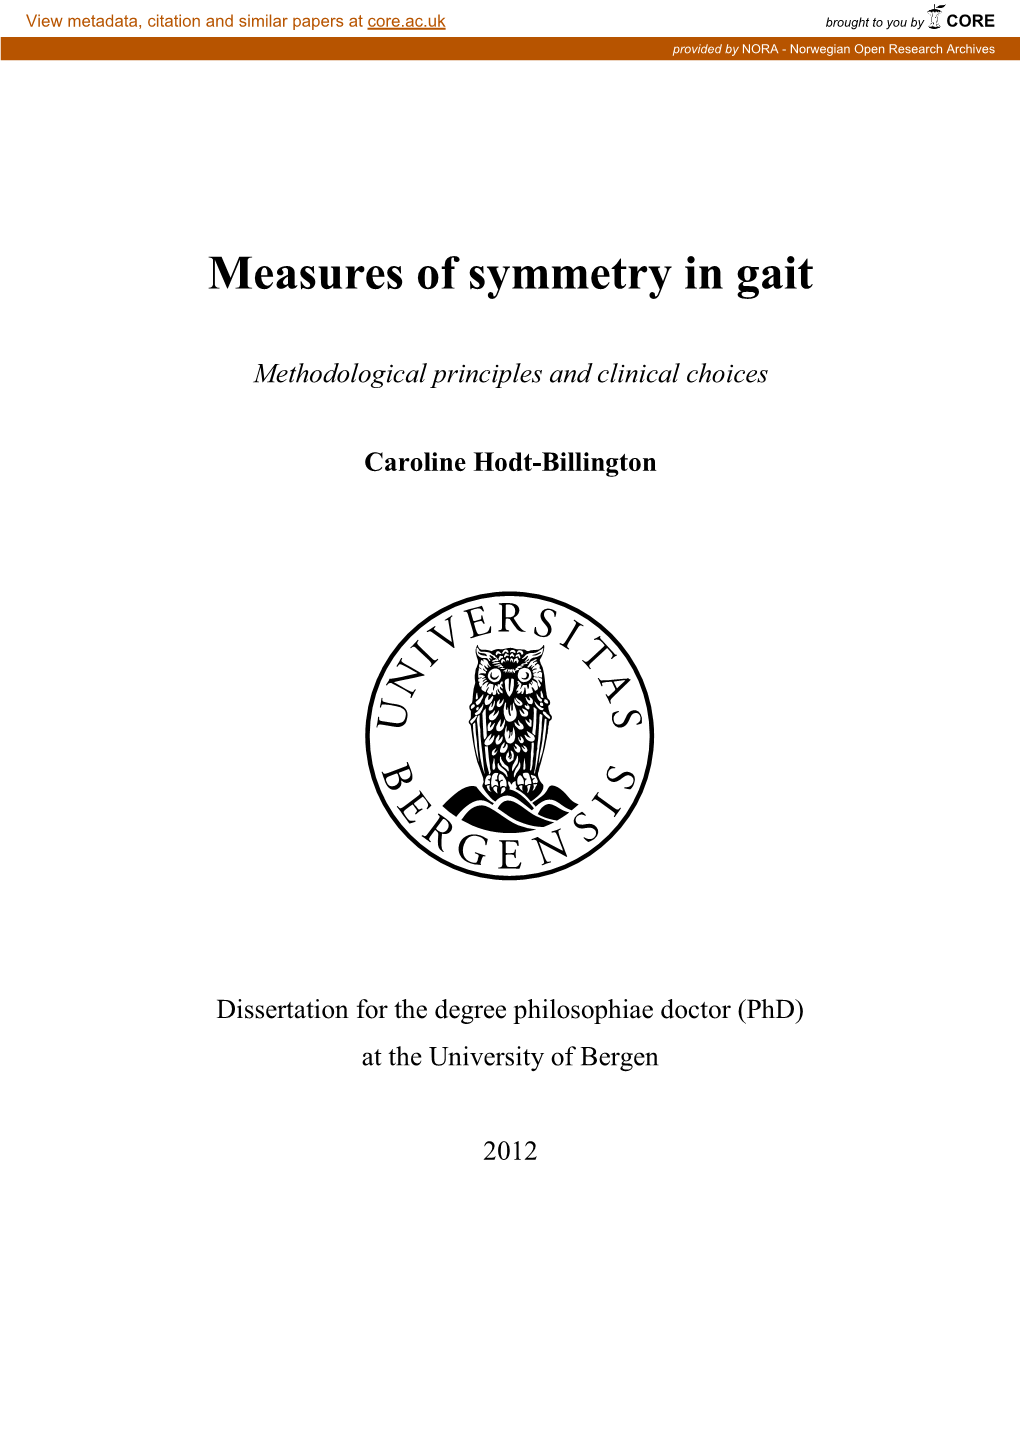 Measures of Symmetry in Gait